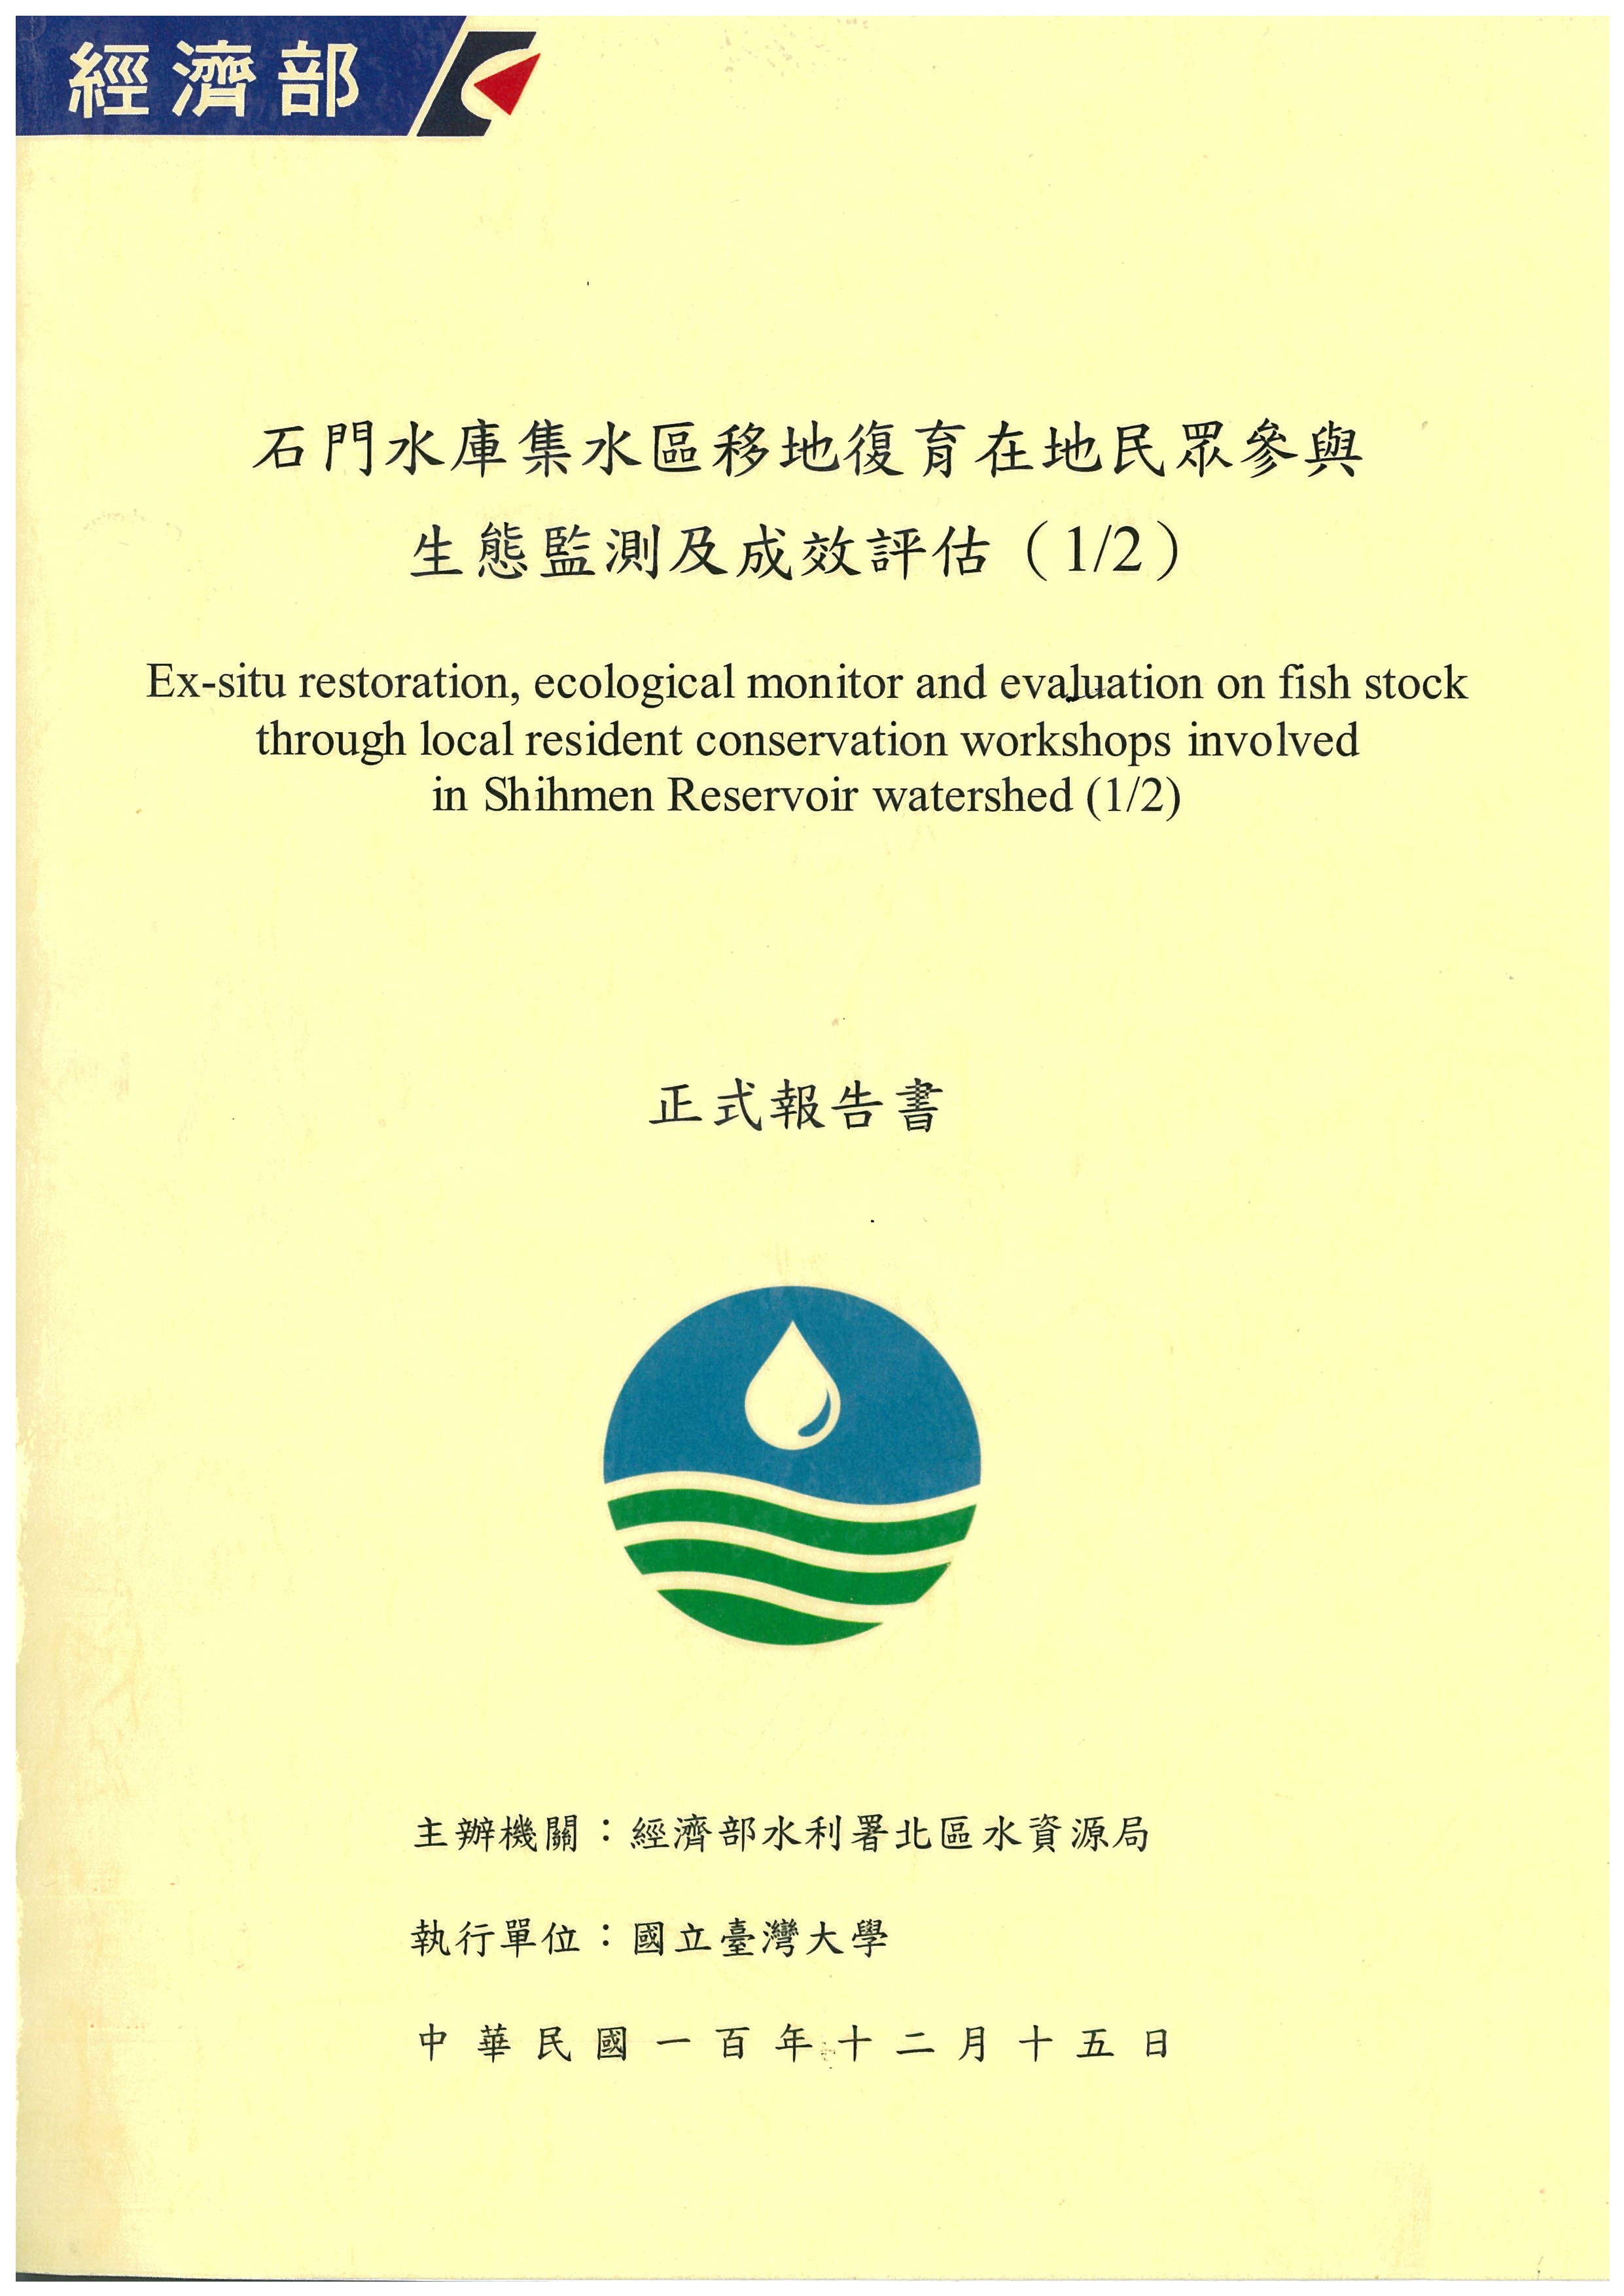 石門水庫集水區移地復育在地民眾參與生態監測及成效評估(1/2)正式報告書